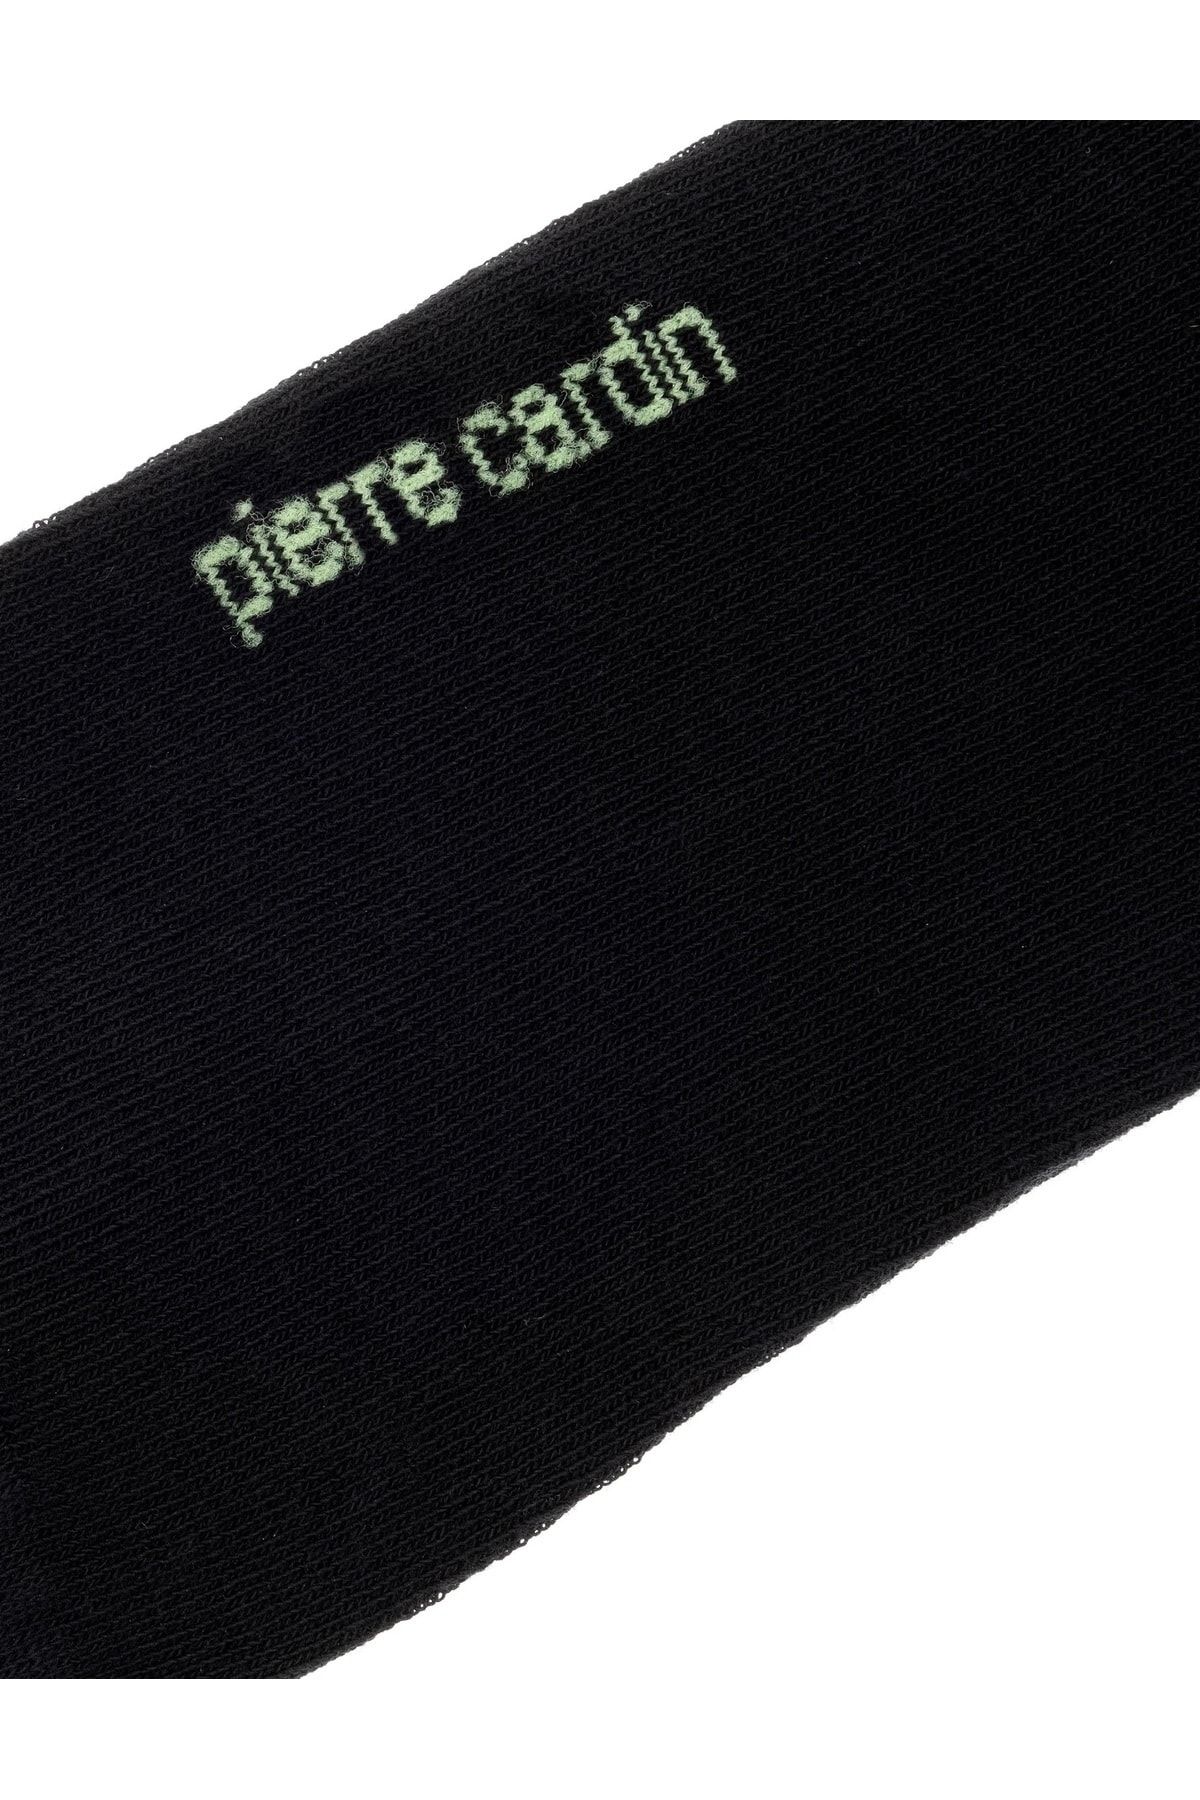 Pierre Cardin جوراب 2 غنیمت سیاه مردانه